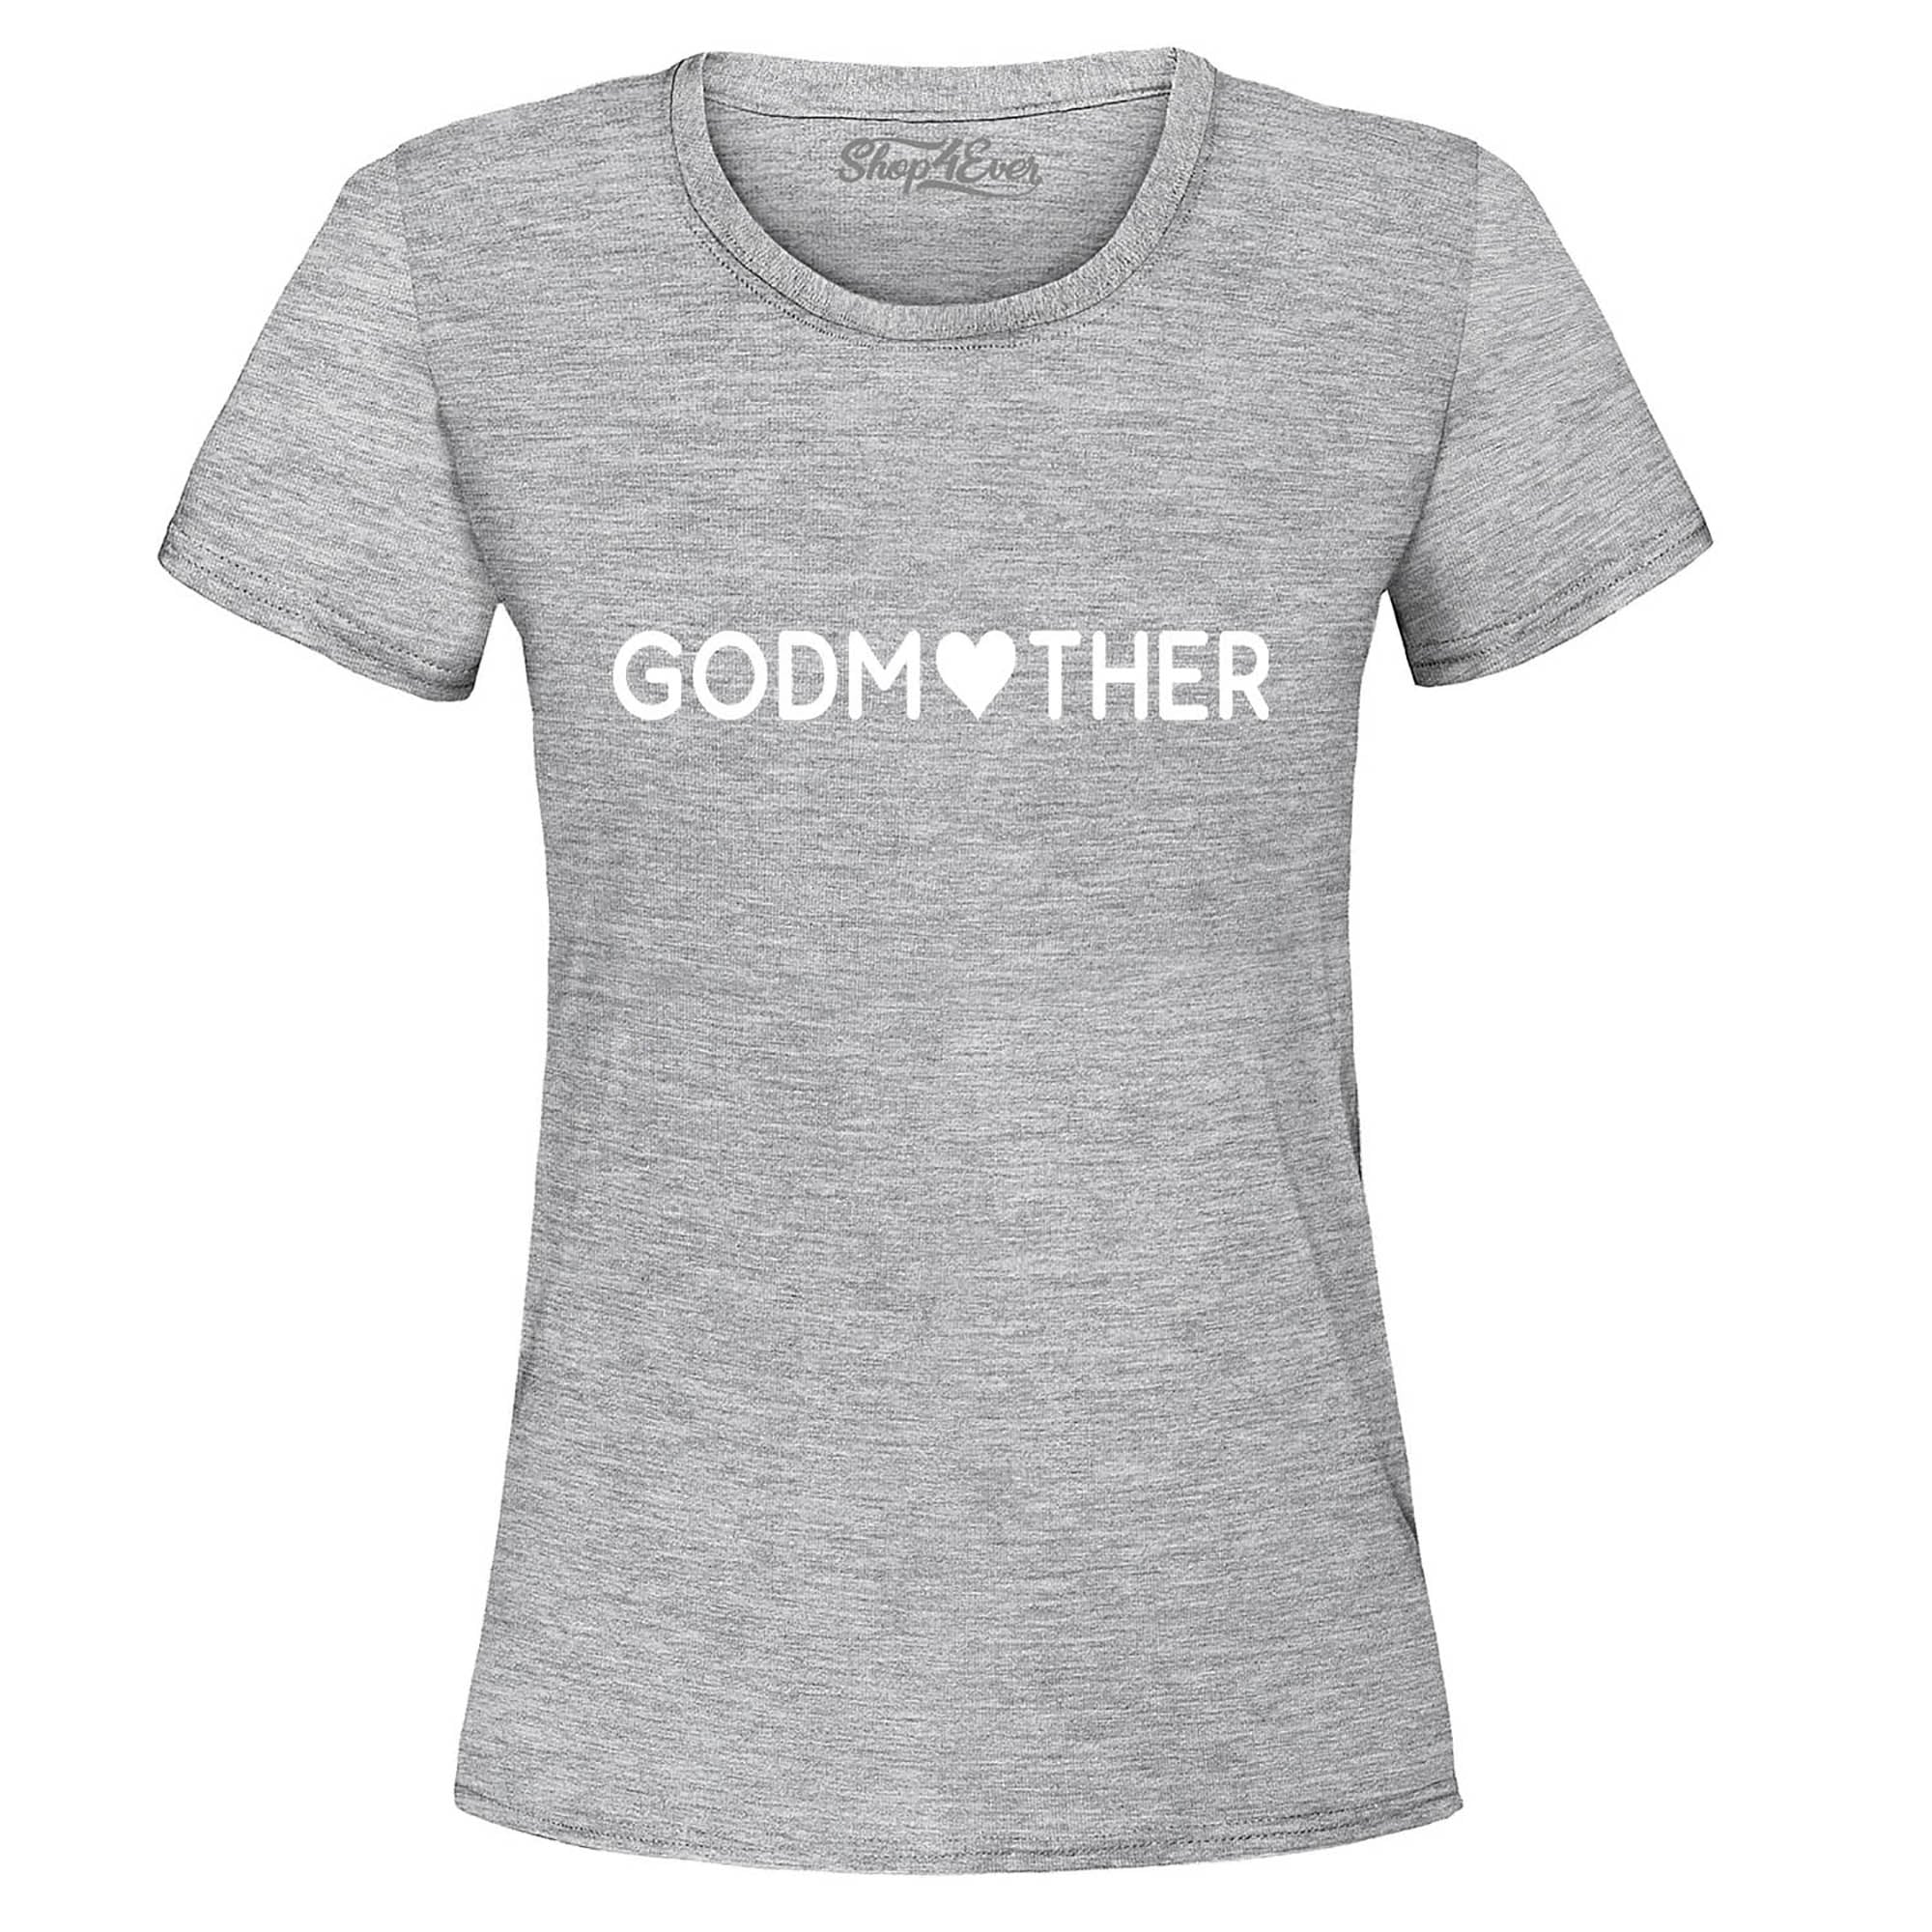 Godmother Women's T-Shirt